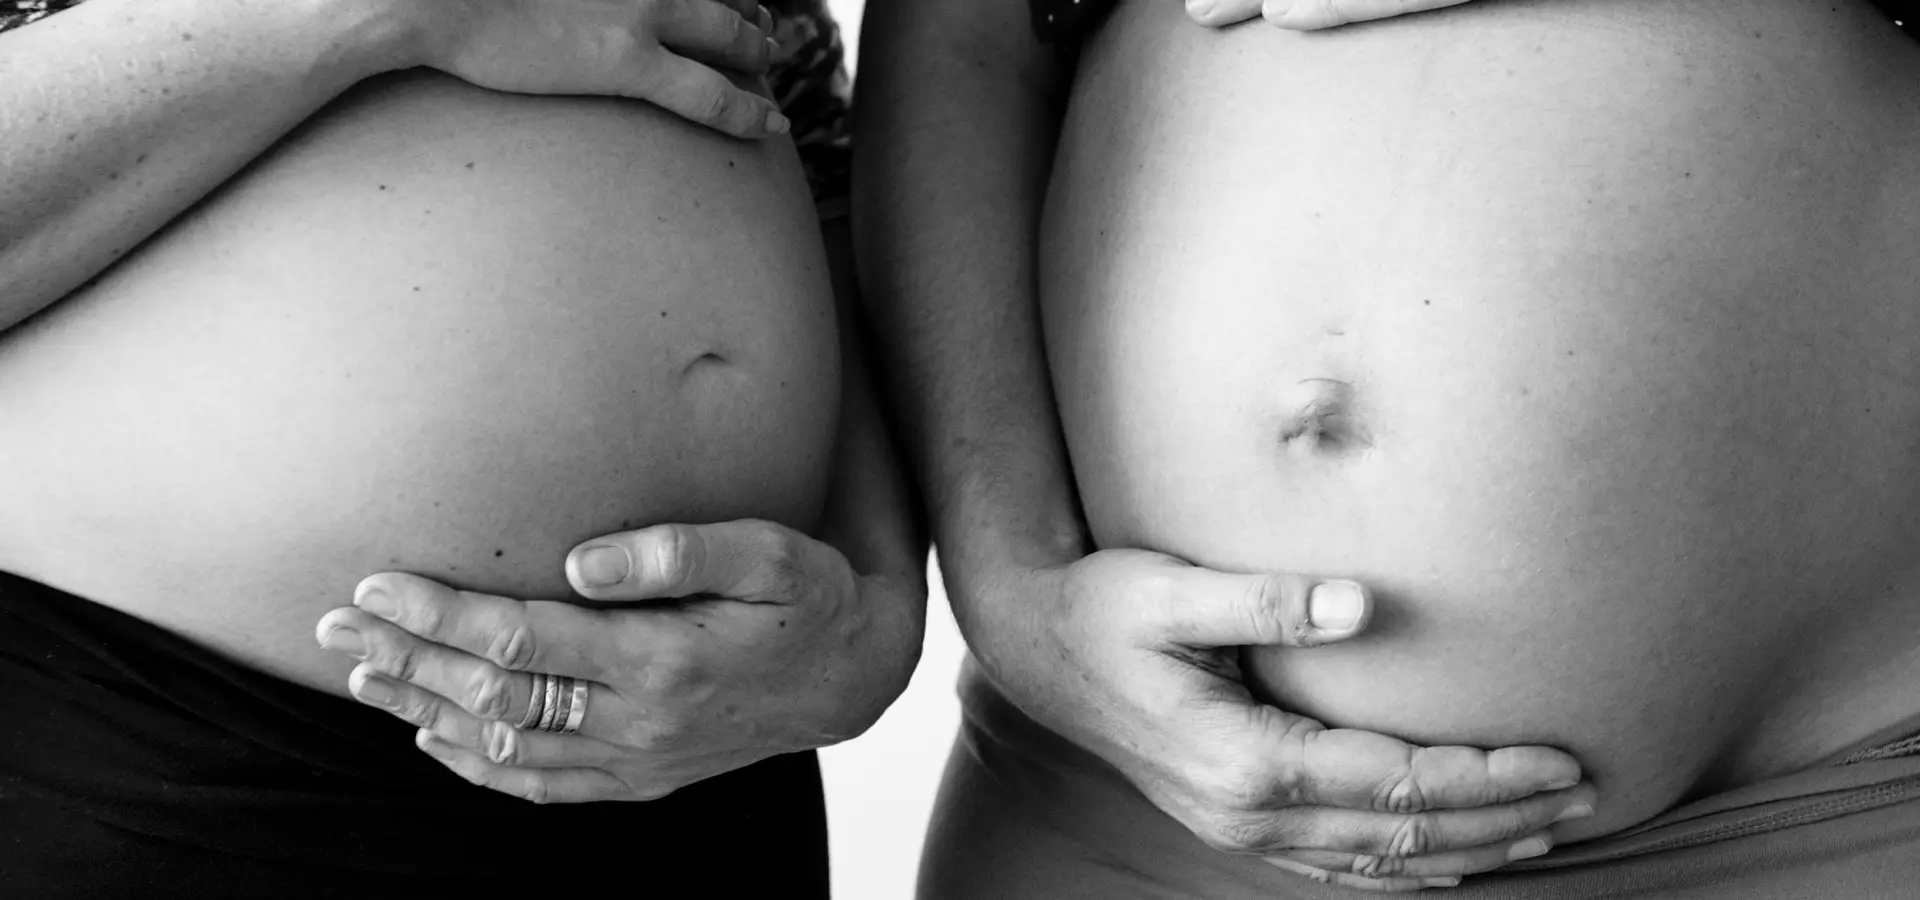 Zwei Personen halten ihre schwangeren Bäuche in Schwarz-Weiß.